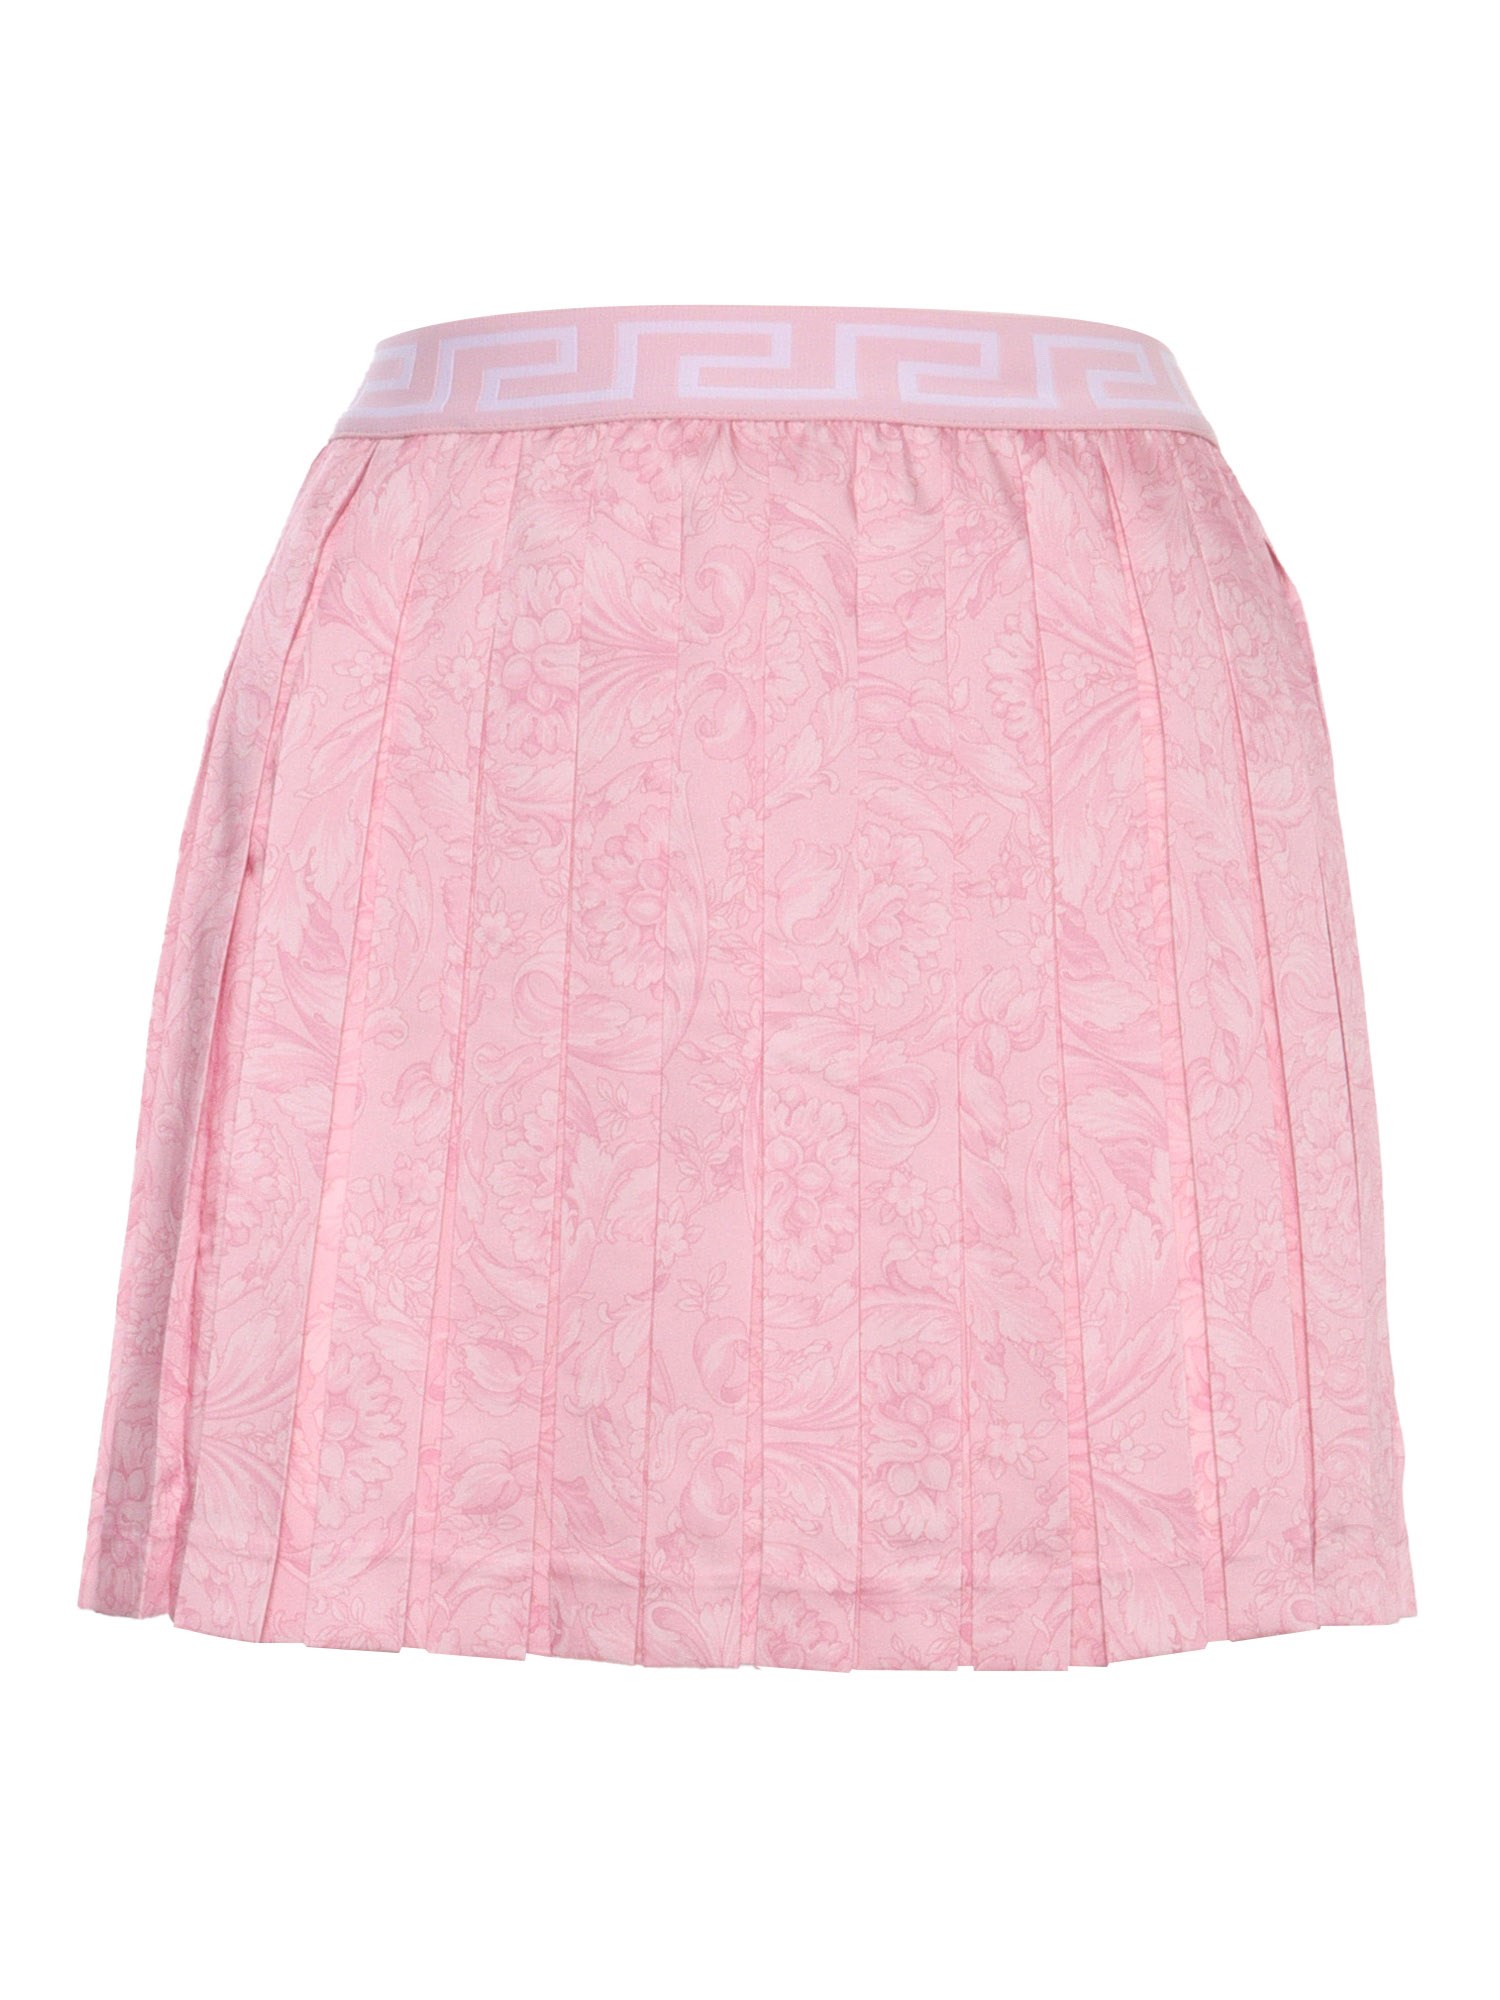 Versace Pink Barocco Skirt